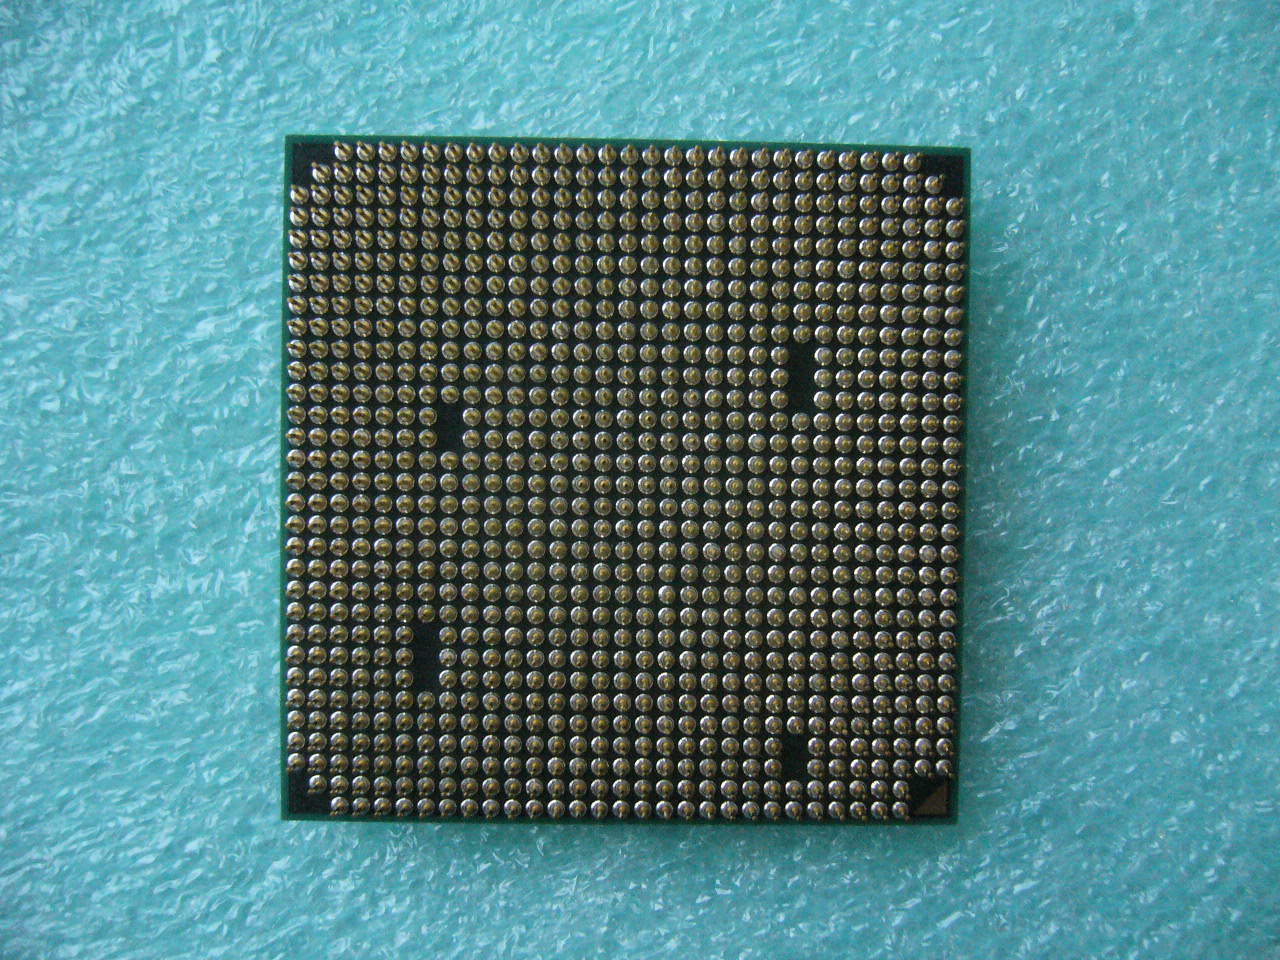 QTY 1x AMD Athlon II X2 220 2.8 GHz Dual-Core (ADX220OCK22GM) CPU Socket AM3 - zum Schließen ins Bild klicken